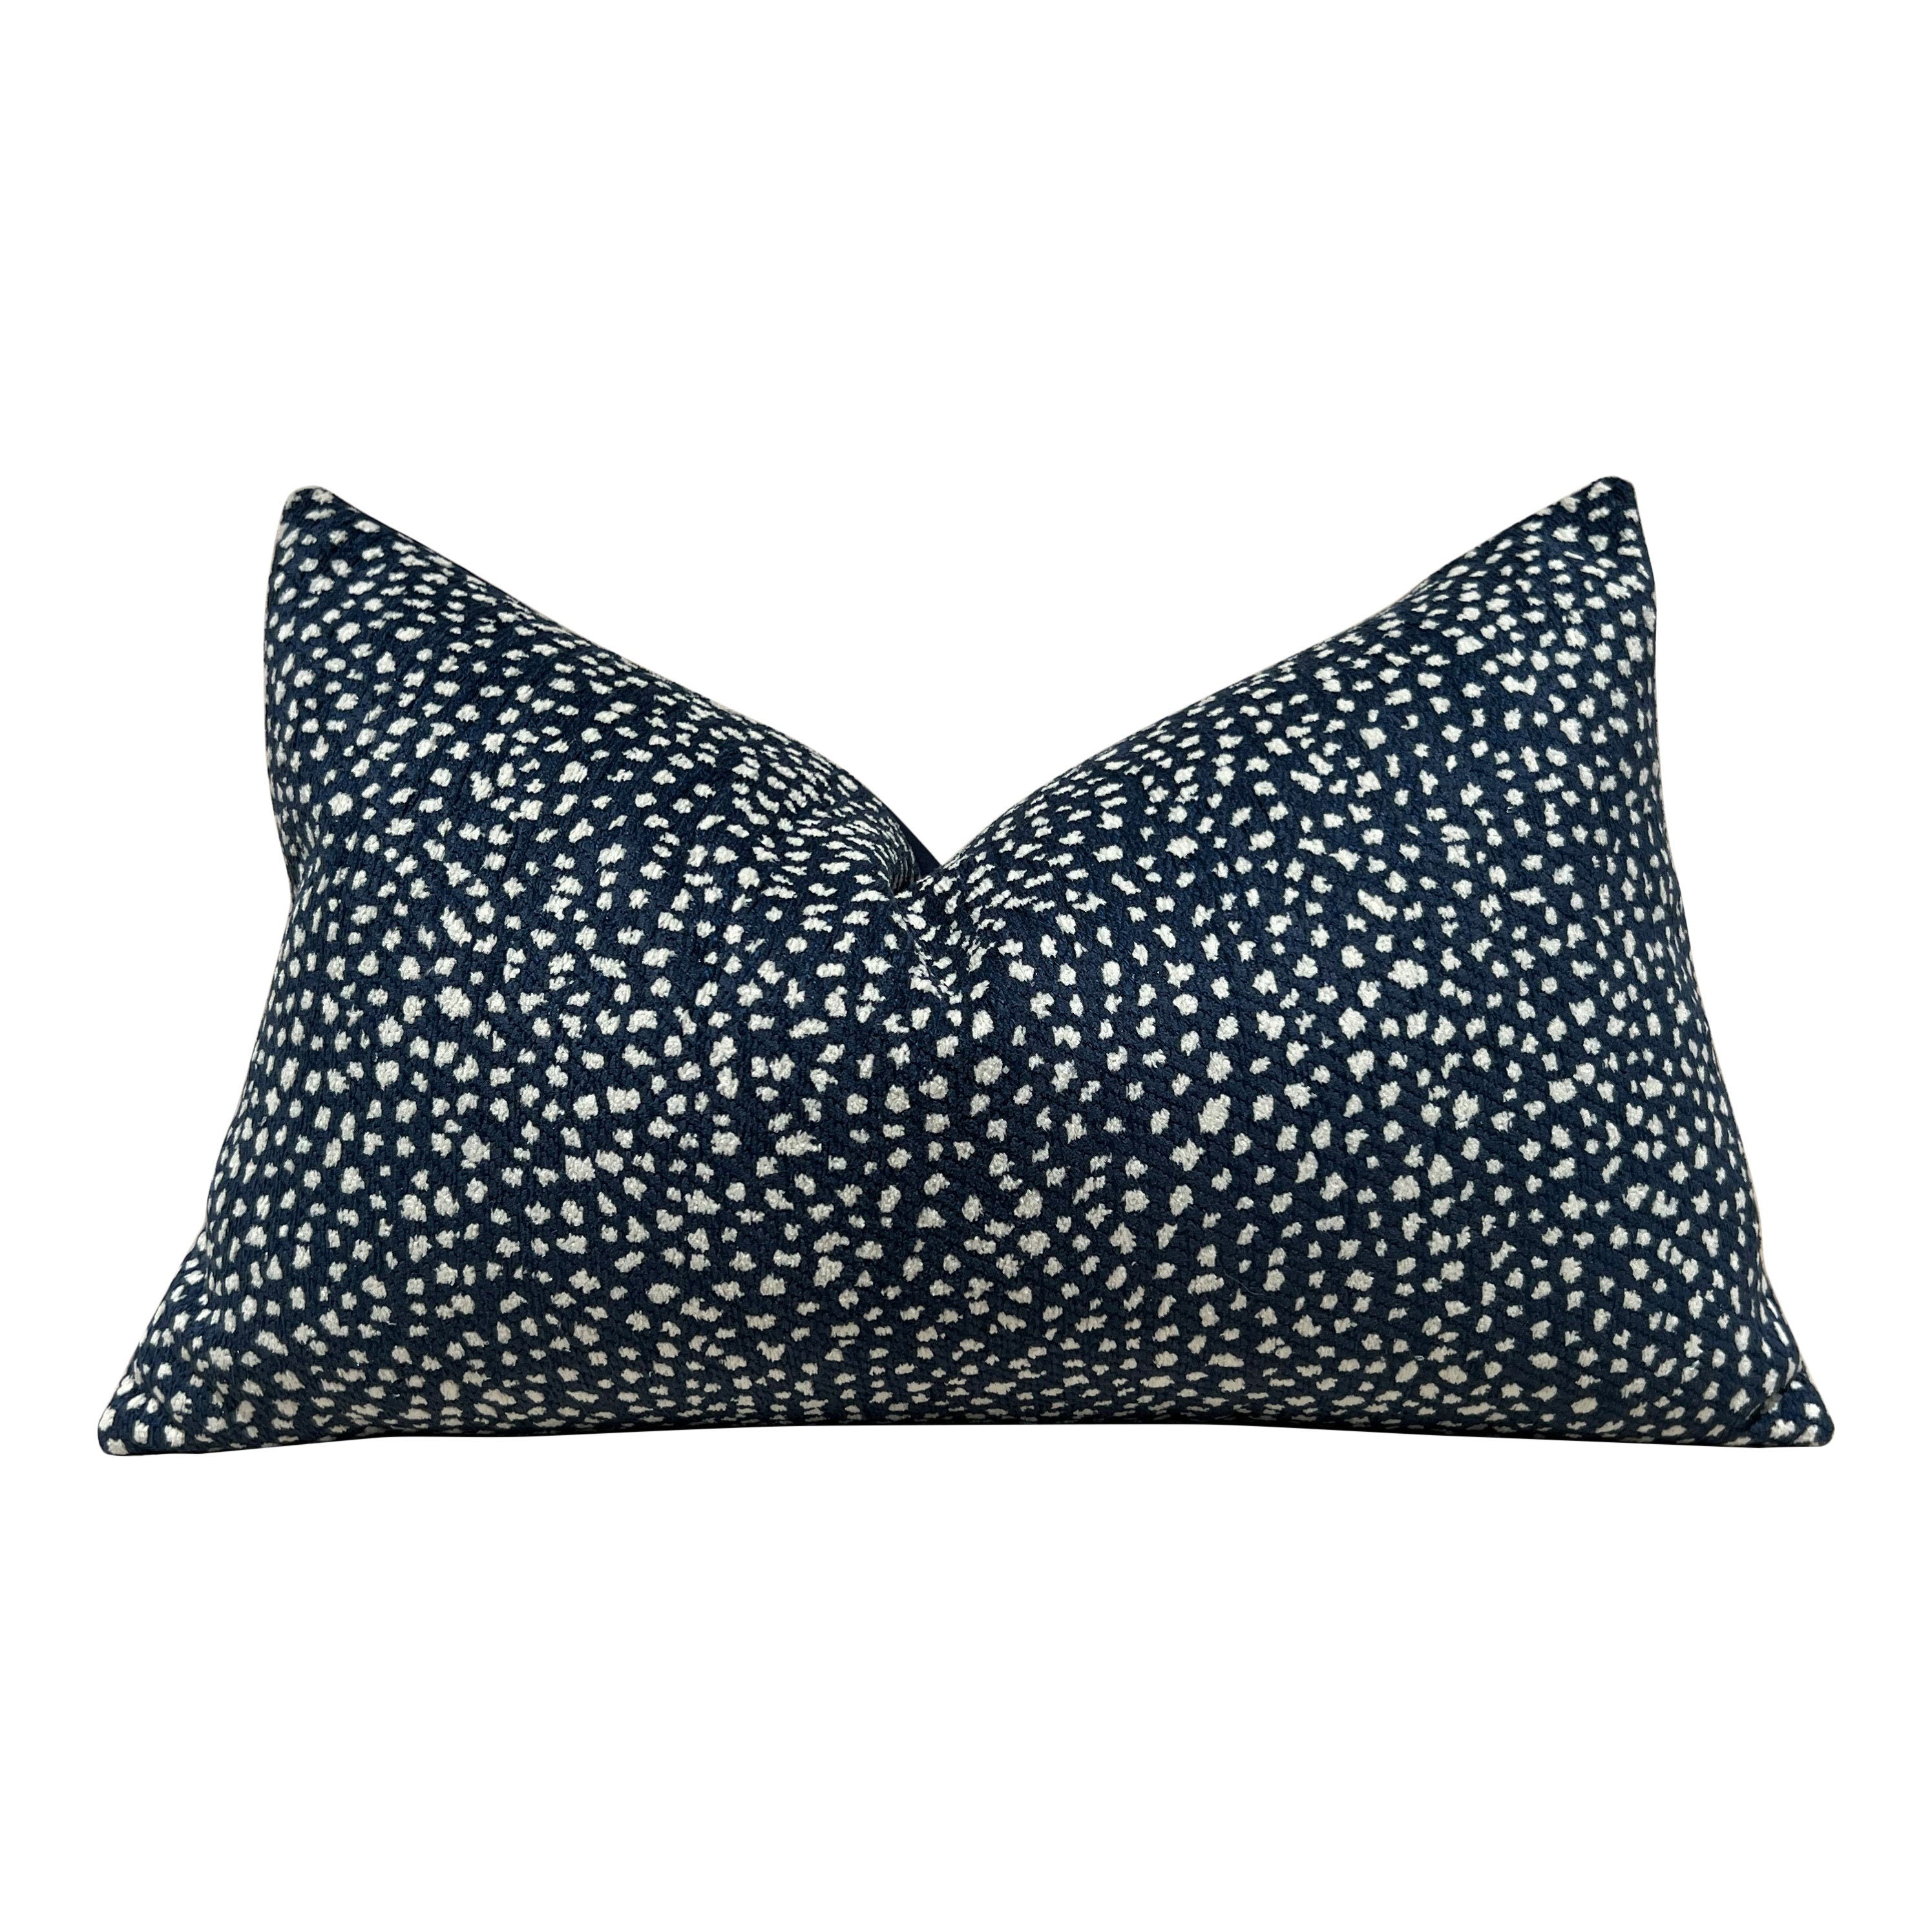 Thibaut Fawn Indoor Outdoor Pillow in Midnight. Outdoor Designer Pillows, High End Pillows, Navy Modern Pillow, Animal Print Lumbar Pillow